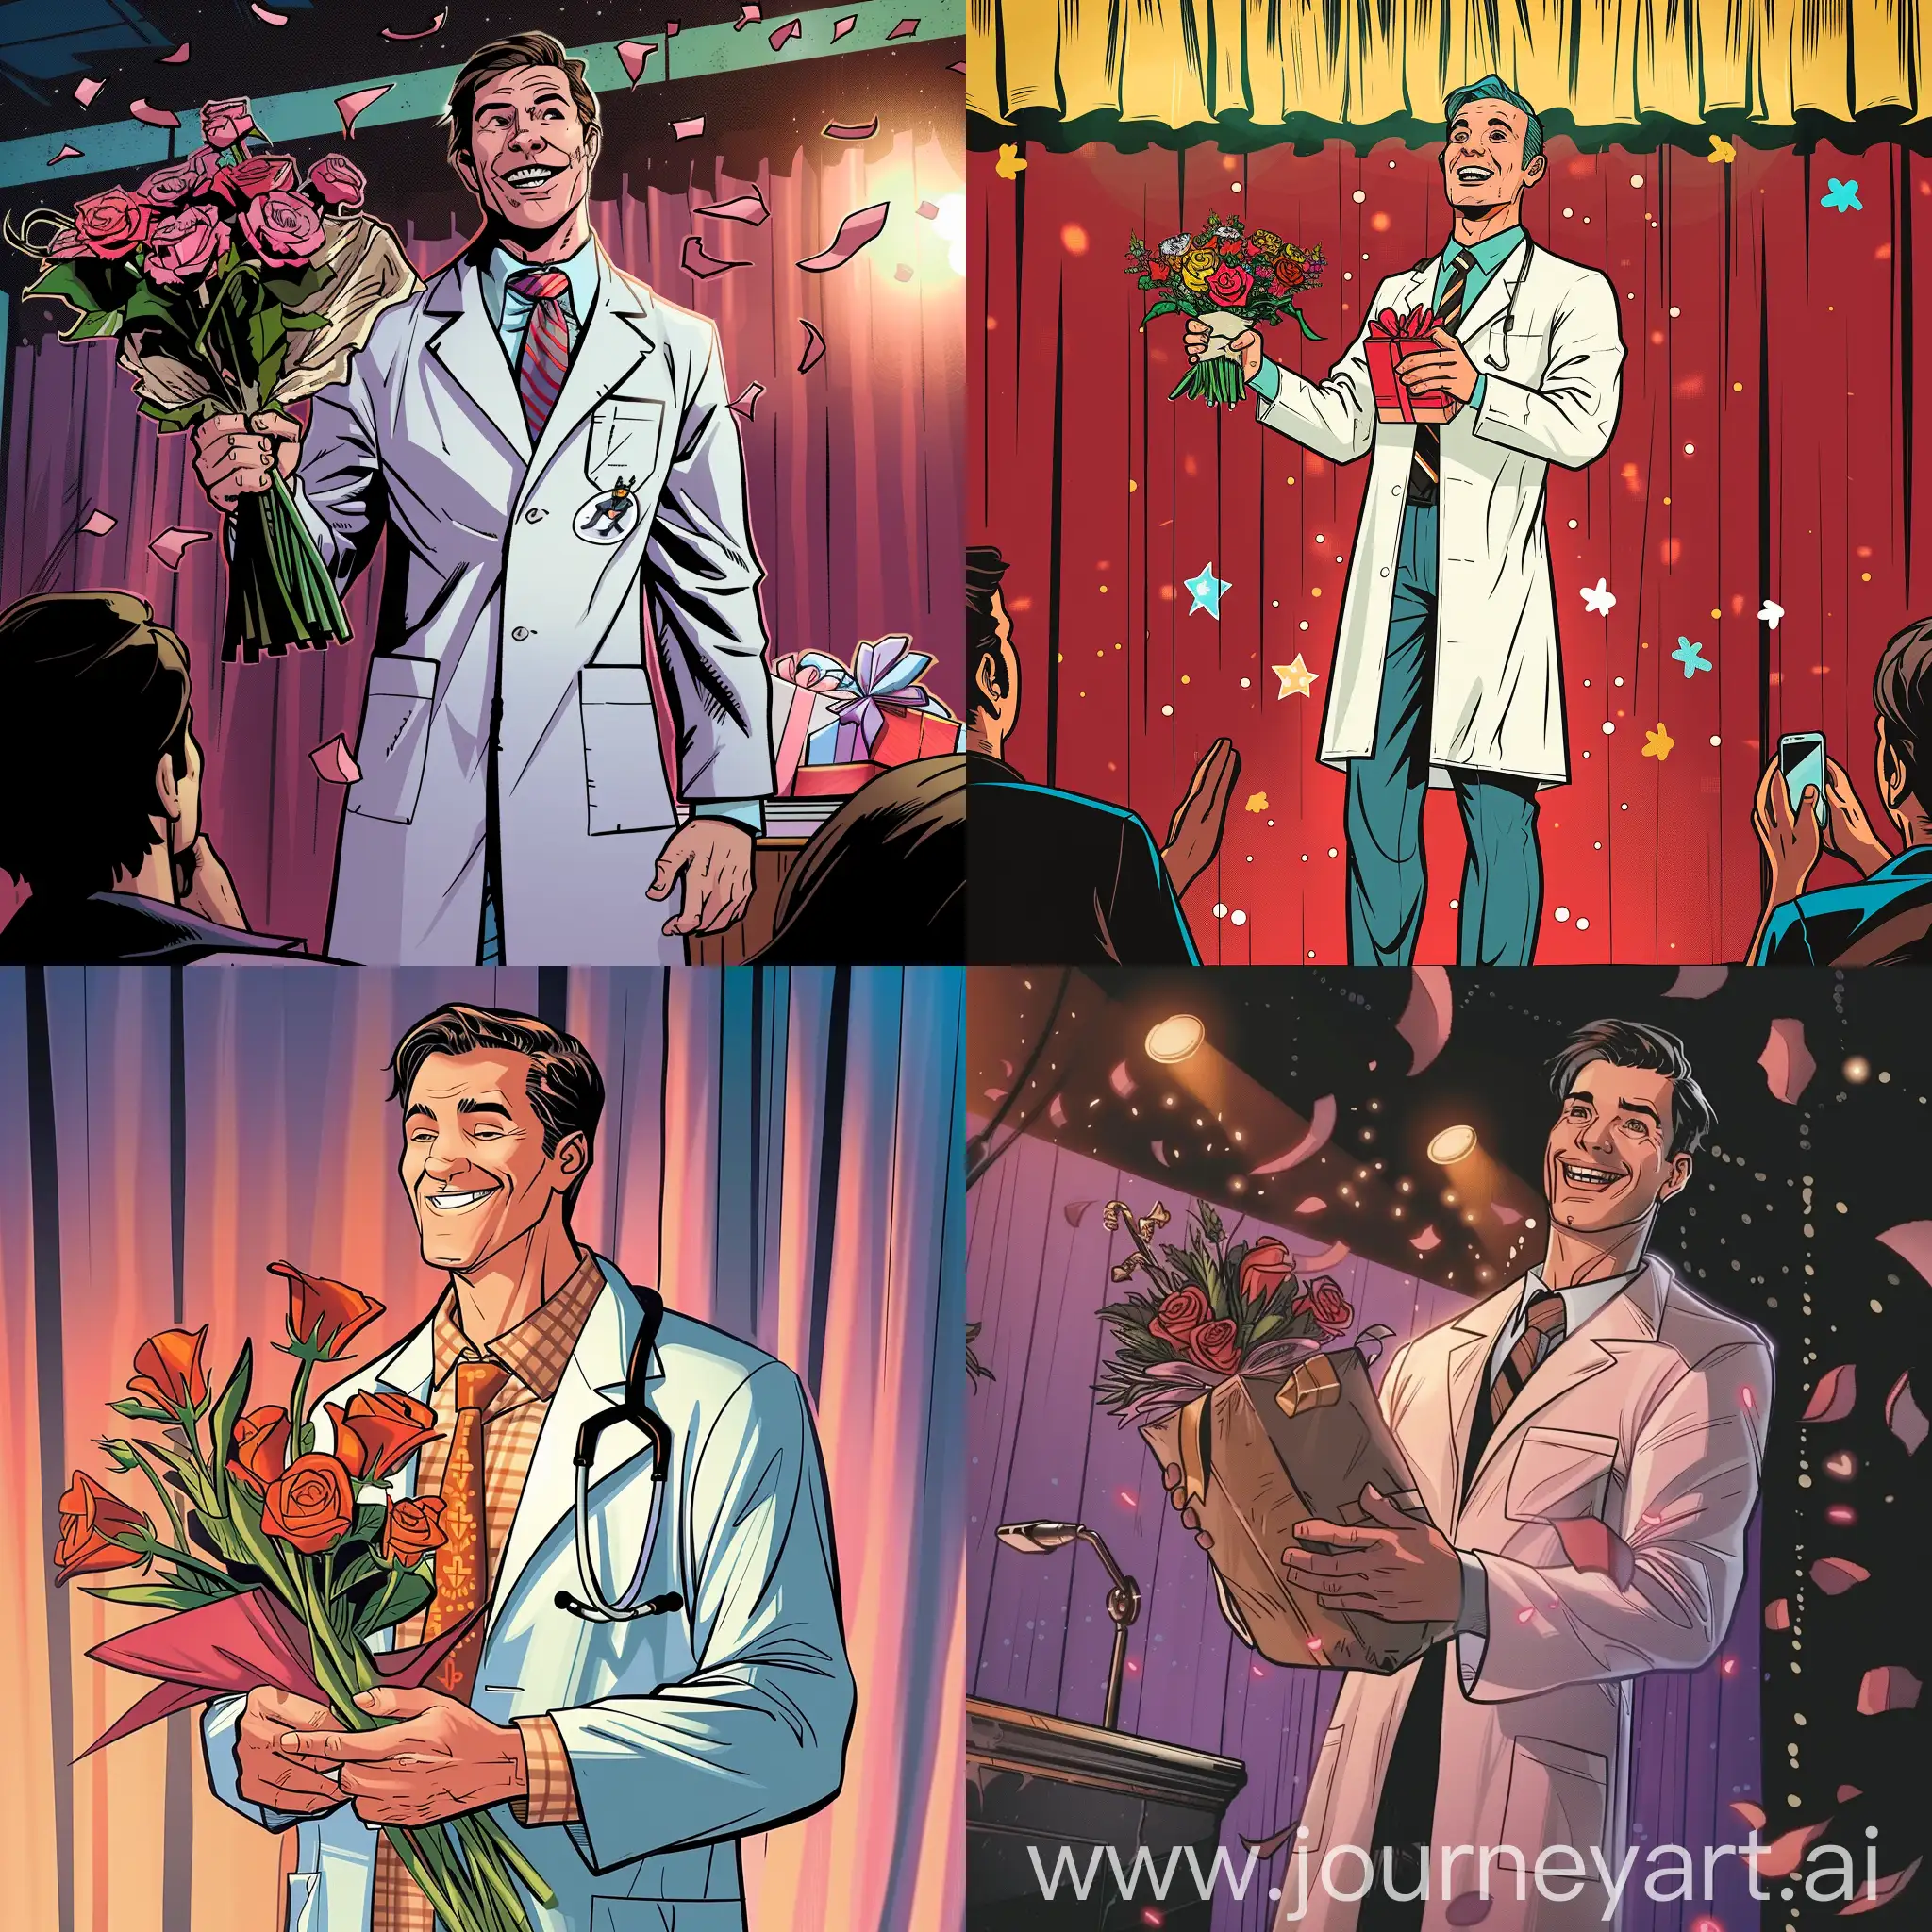 врач в костюме стоит на сцене, ему все  апплодируют и дарят подарки и цветы, он улыбается, изображение в формате комикса 
